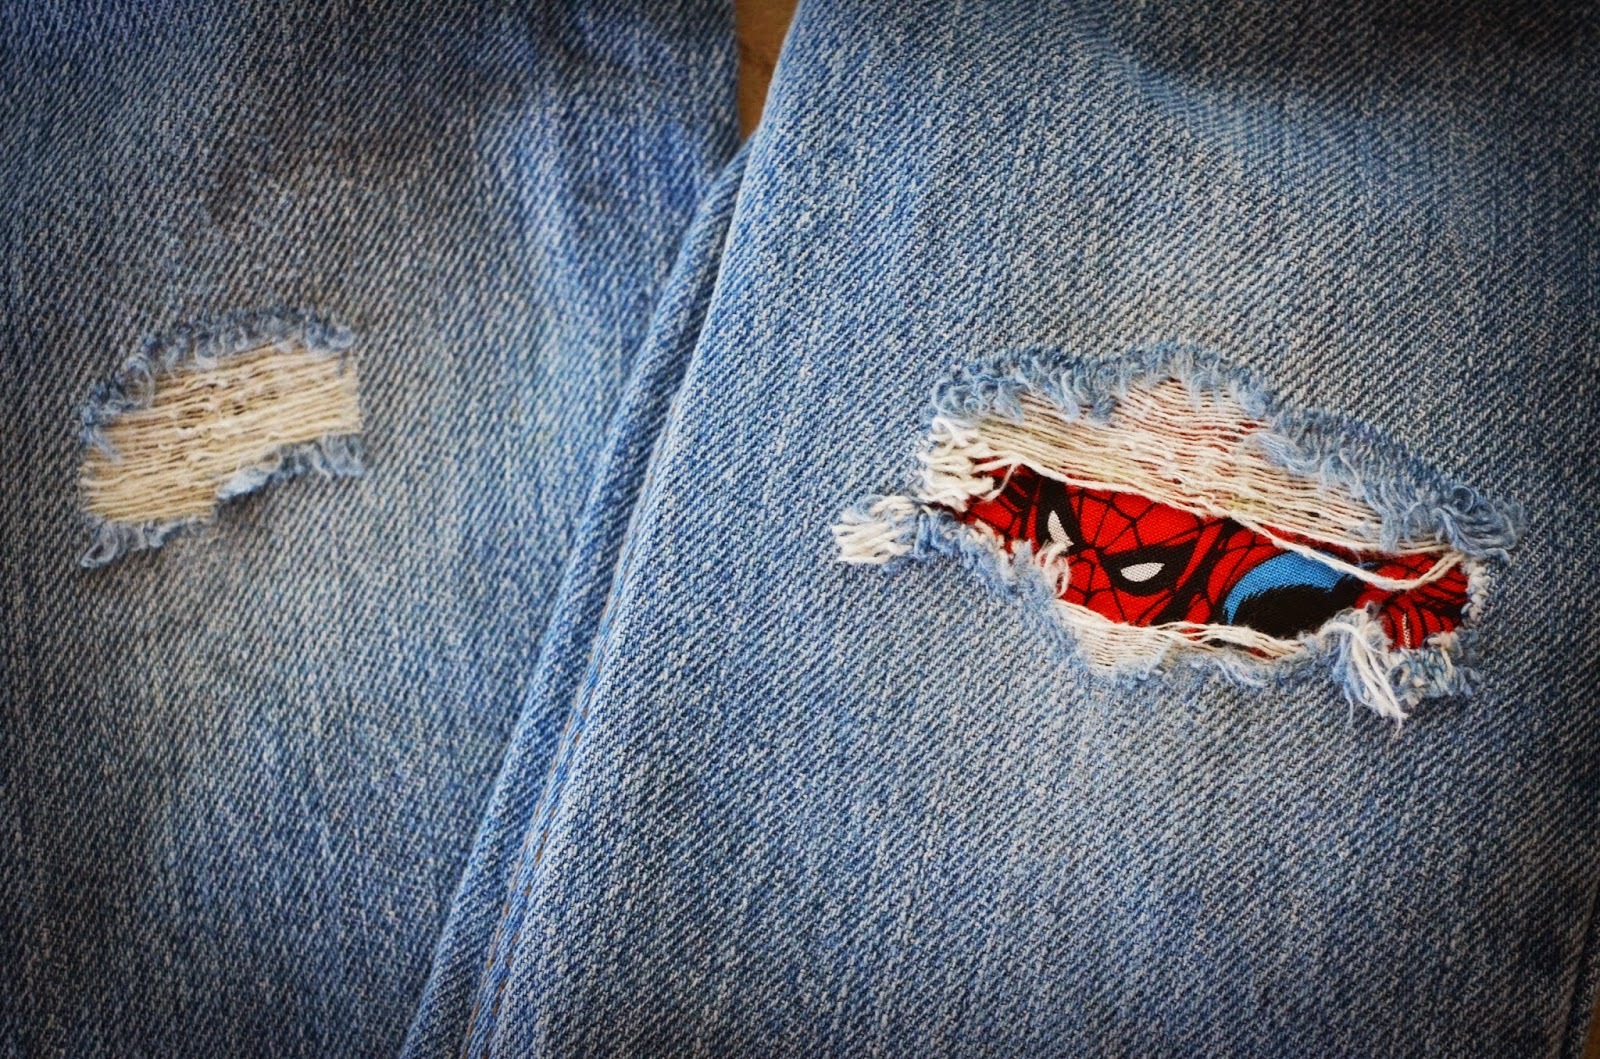 Ремонт дырок на джинсах